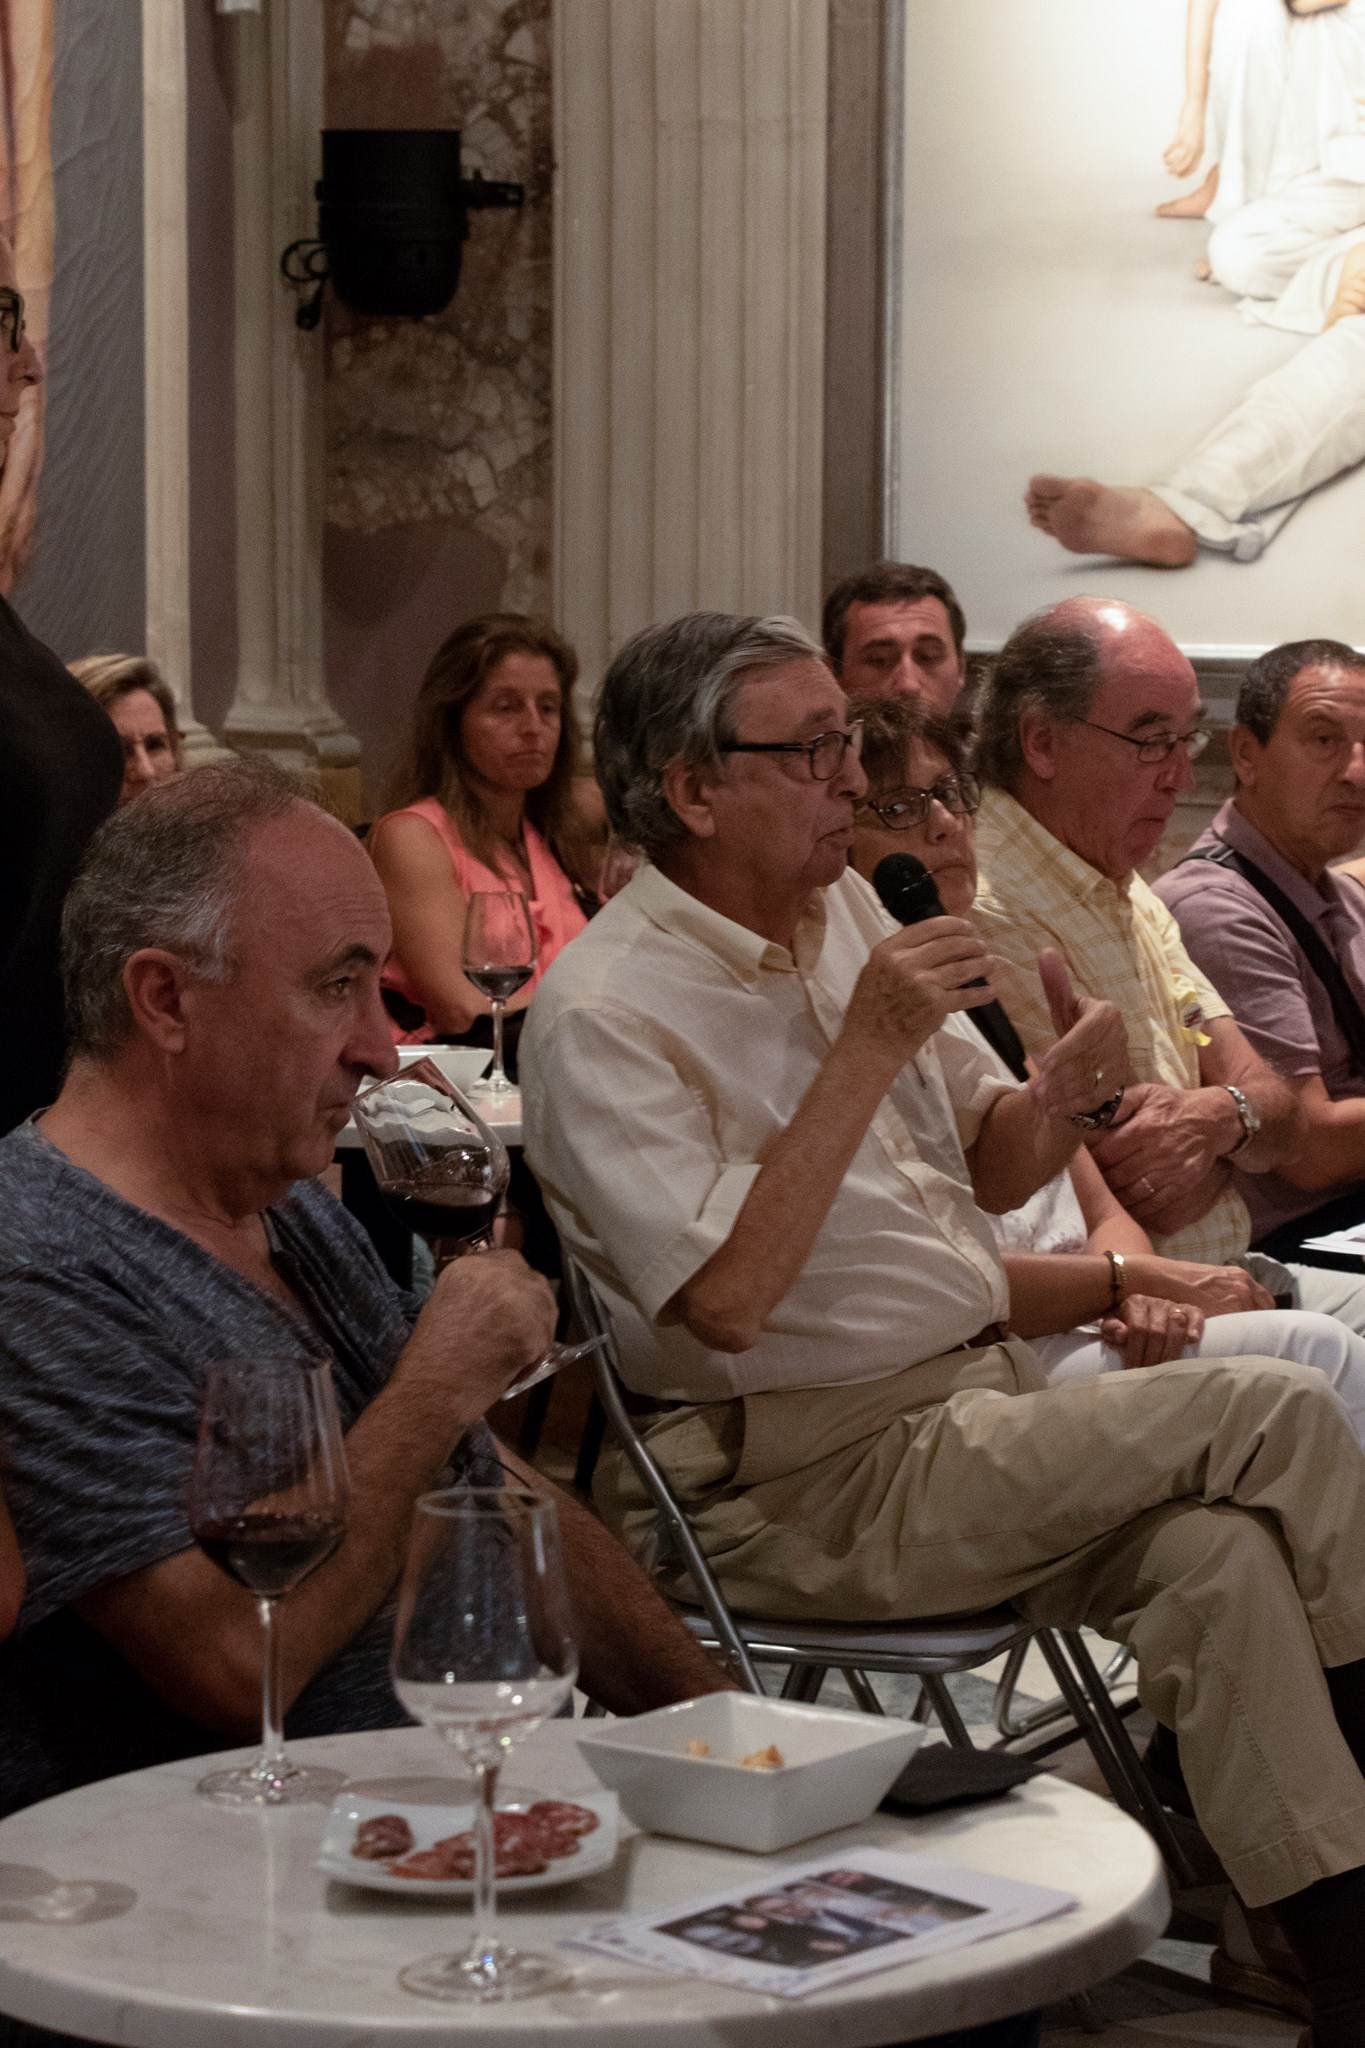  Primer #VisàVis amb Antoni Bassas i Buil & Giné [Setmana del Llibre en Català]